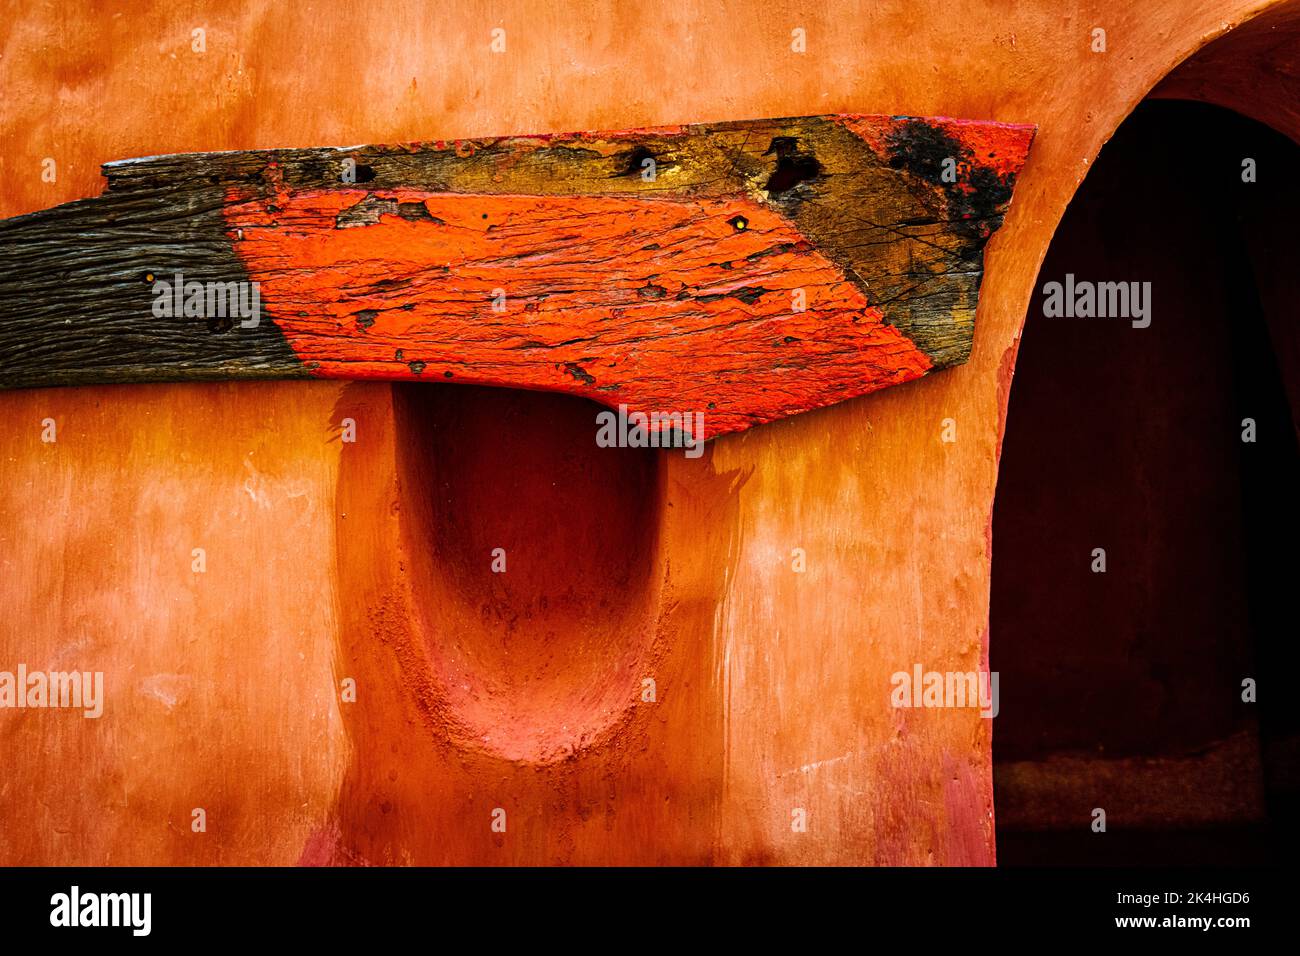 Un grand morceau de bois peint en orange et noir d'un vieux bateau de pêche est cloué au-dessus d'un trou comme un trou de peep à côté d'une entrée voûtée. Banque D'Images